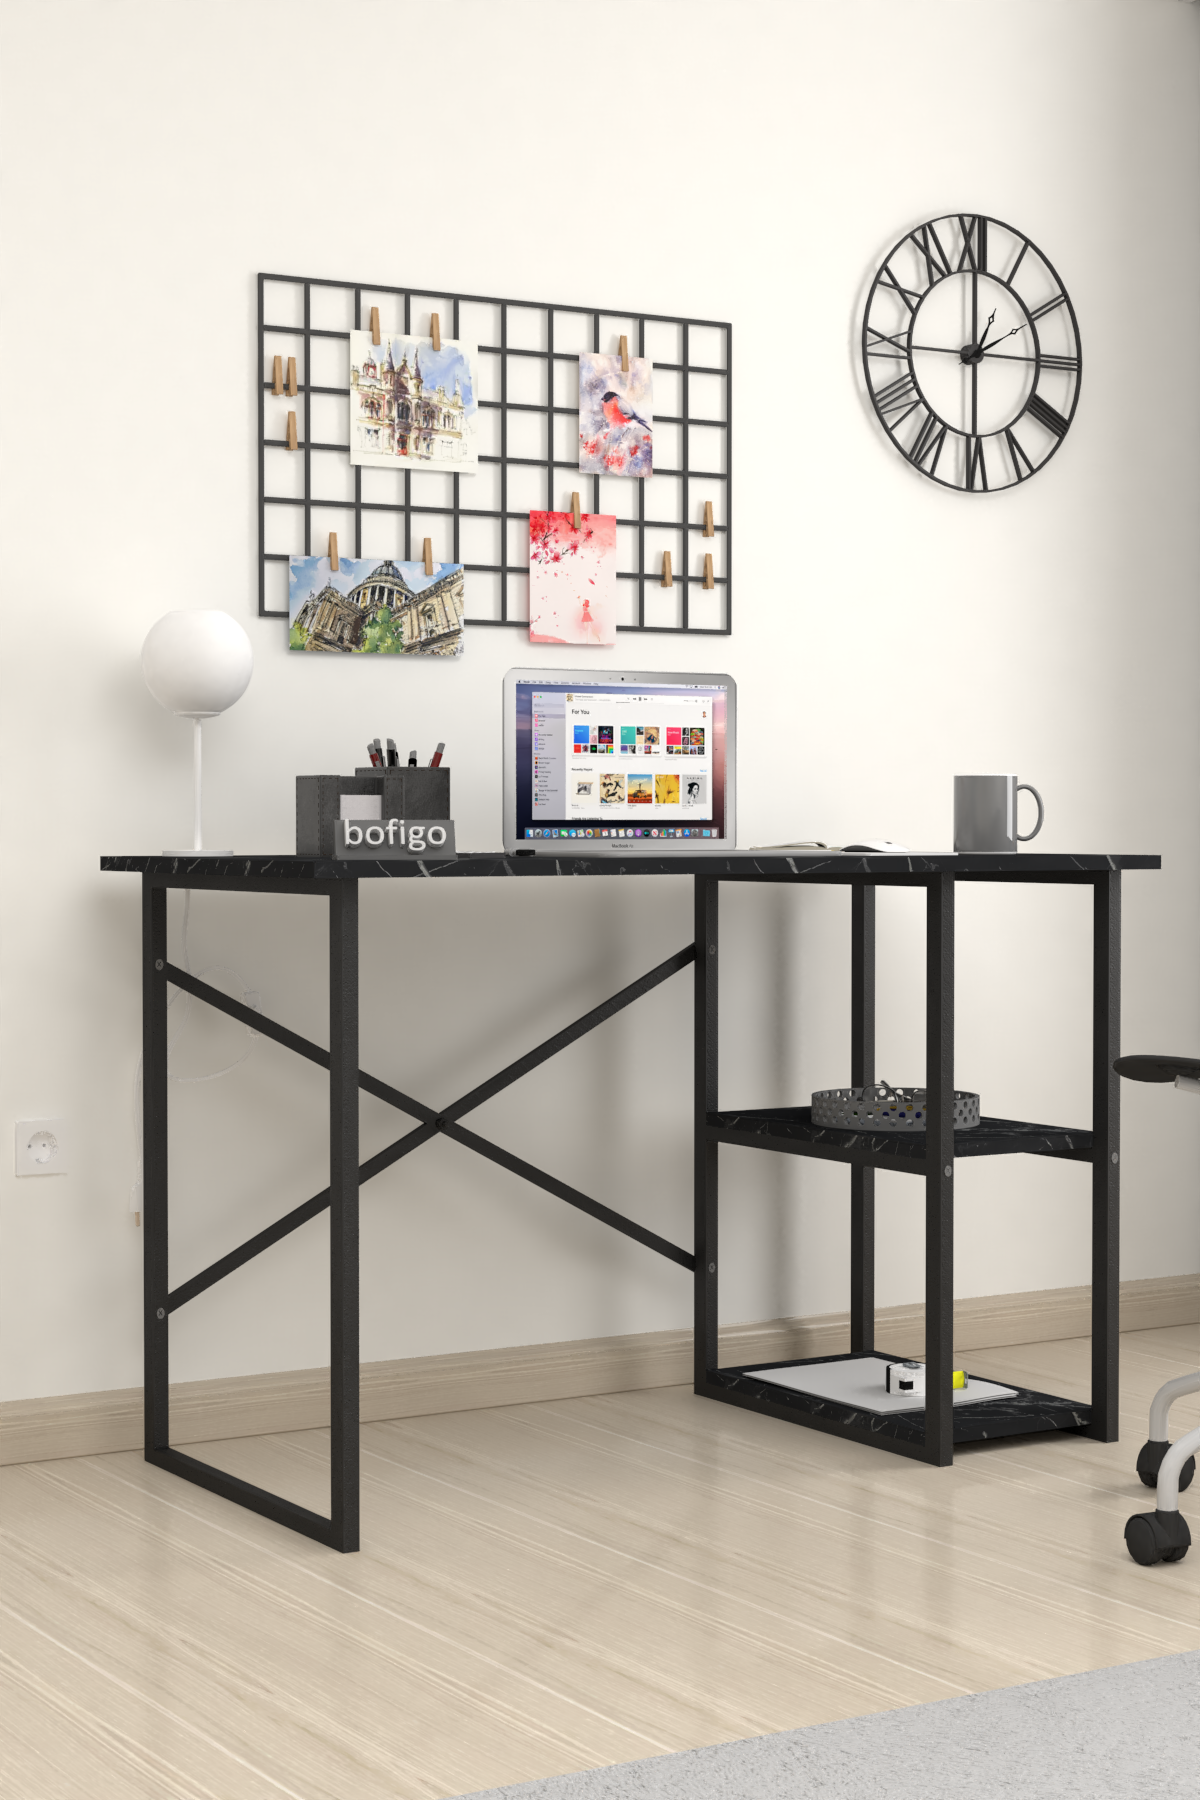 Bofigo 2 Shelf Study Desk 60x120 cm  Bendir